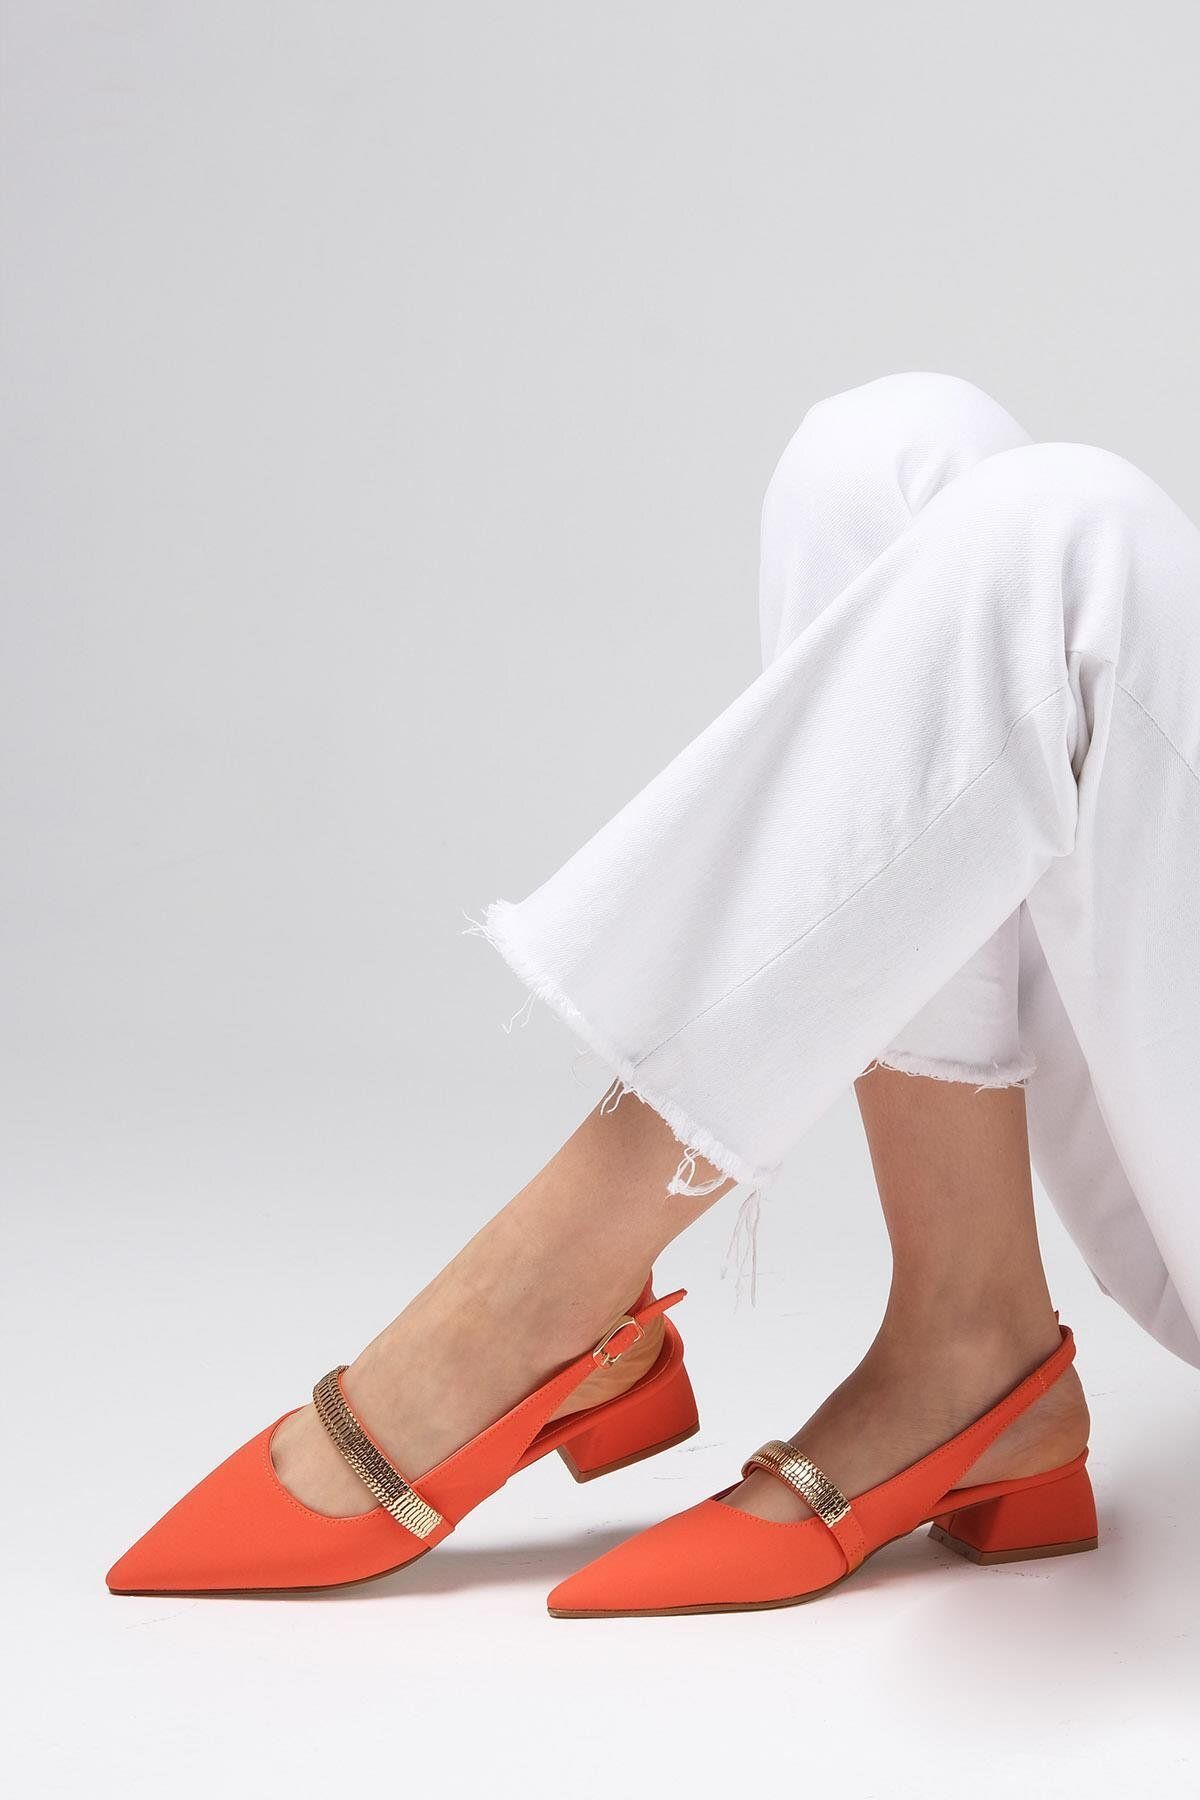 Mio Gusto Laura Turuncu Renk Arkası Açık Mat Saten Kumaş Kadın Kısa Topuklu Ayakkabı